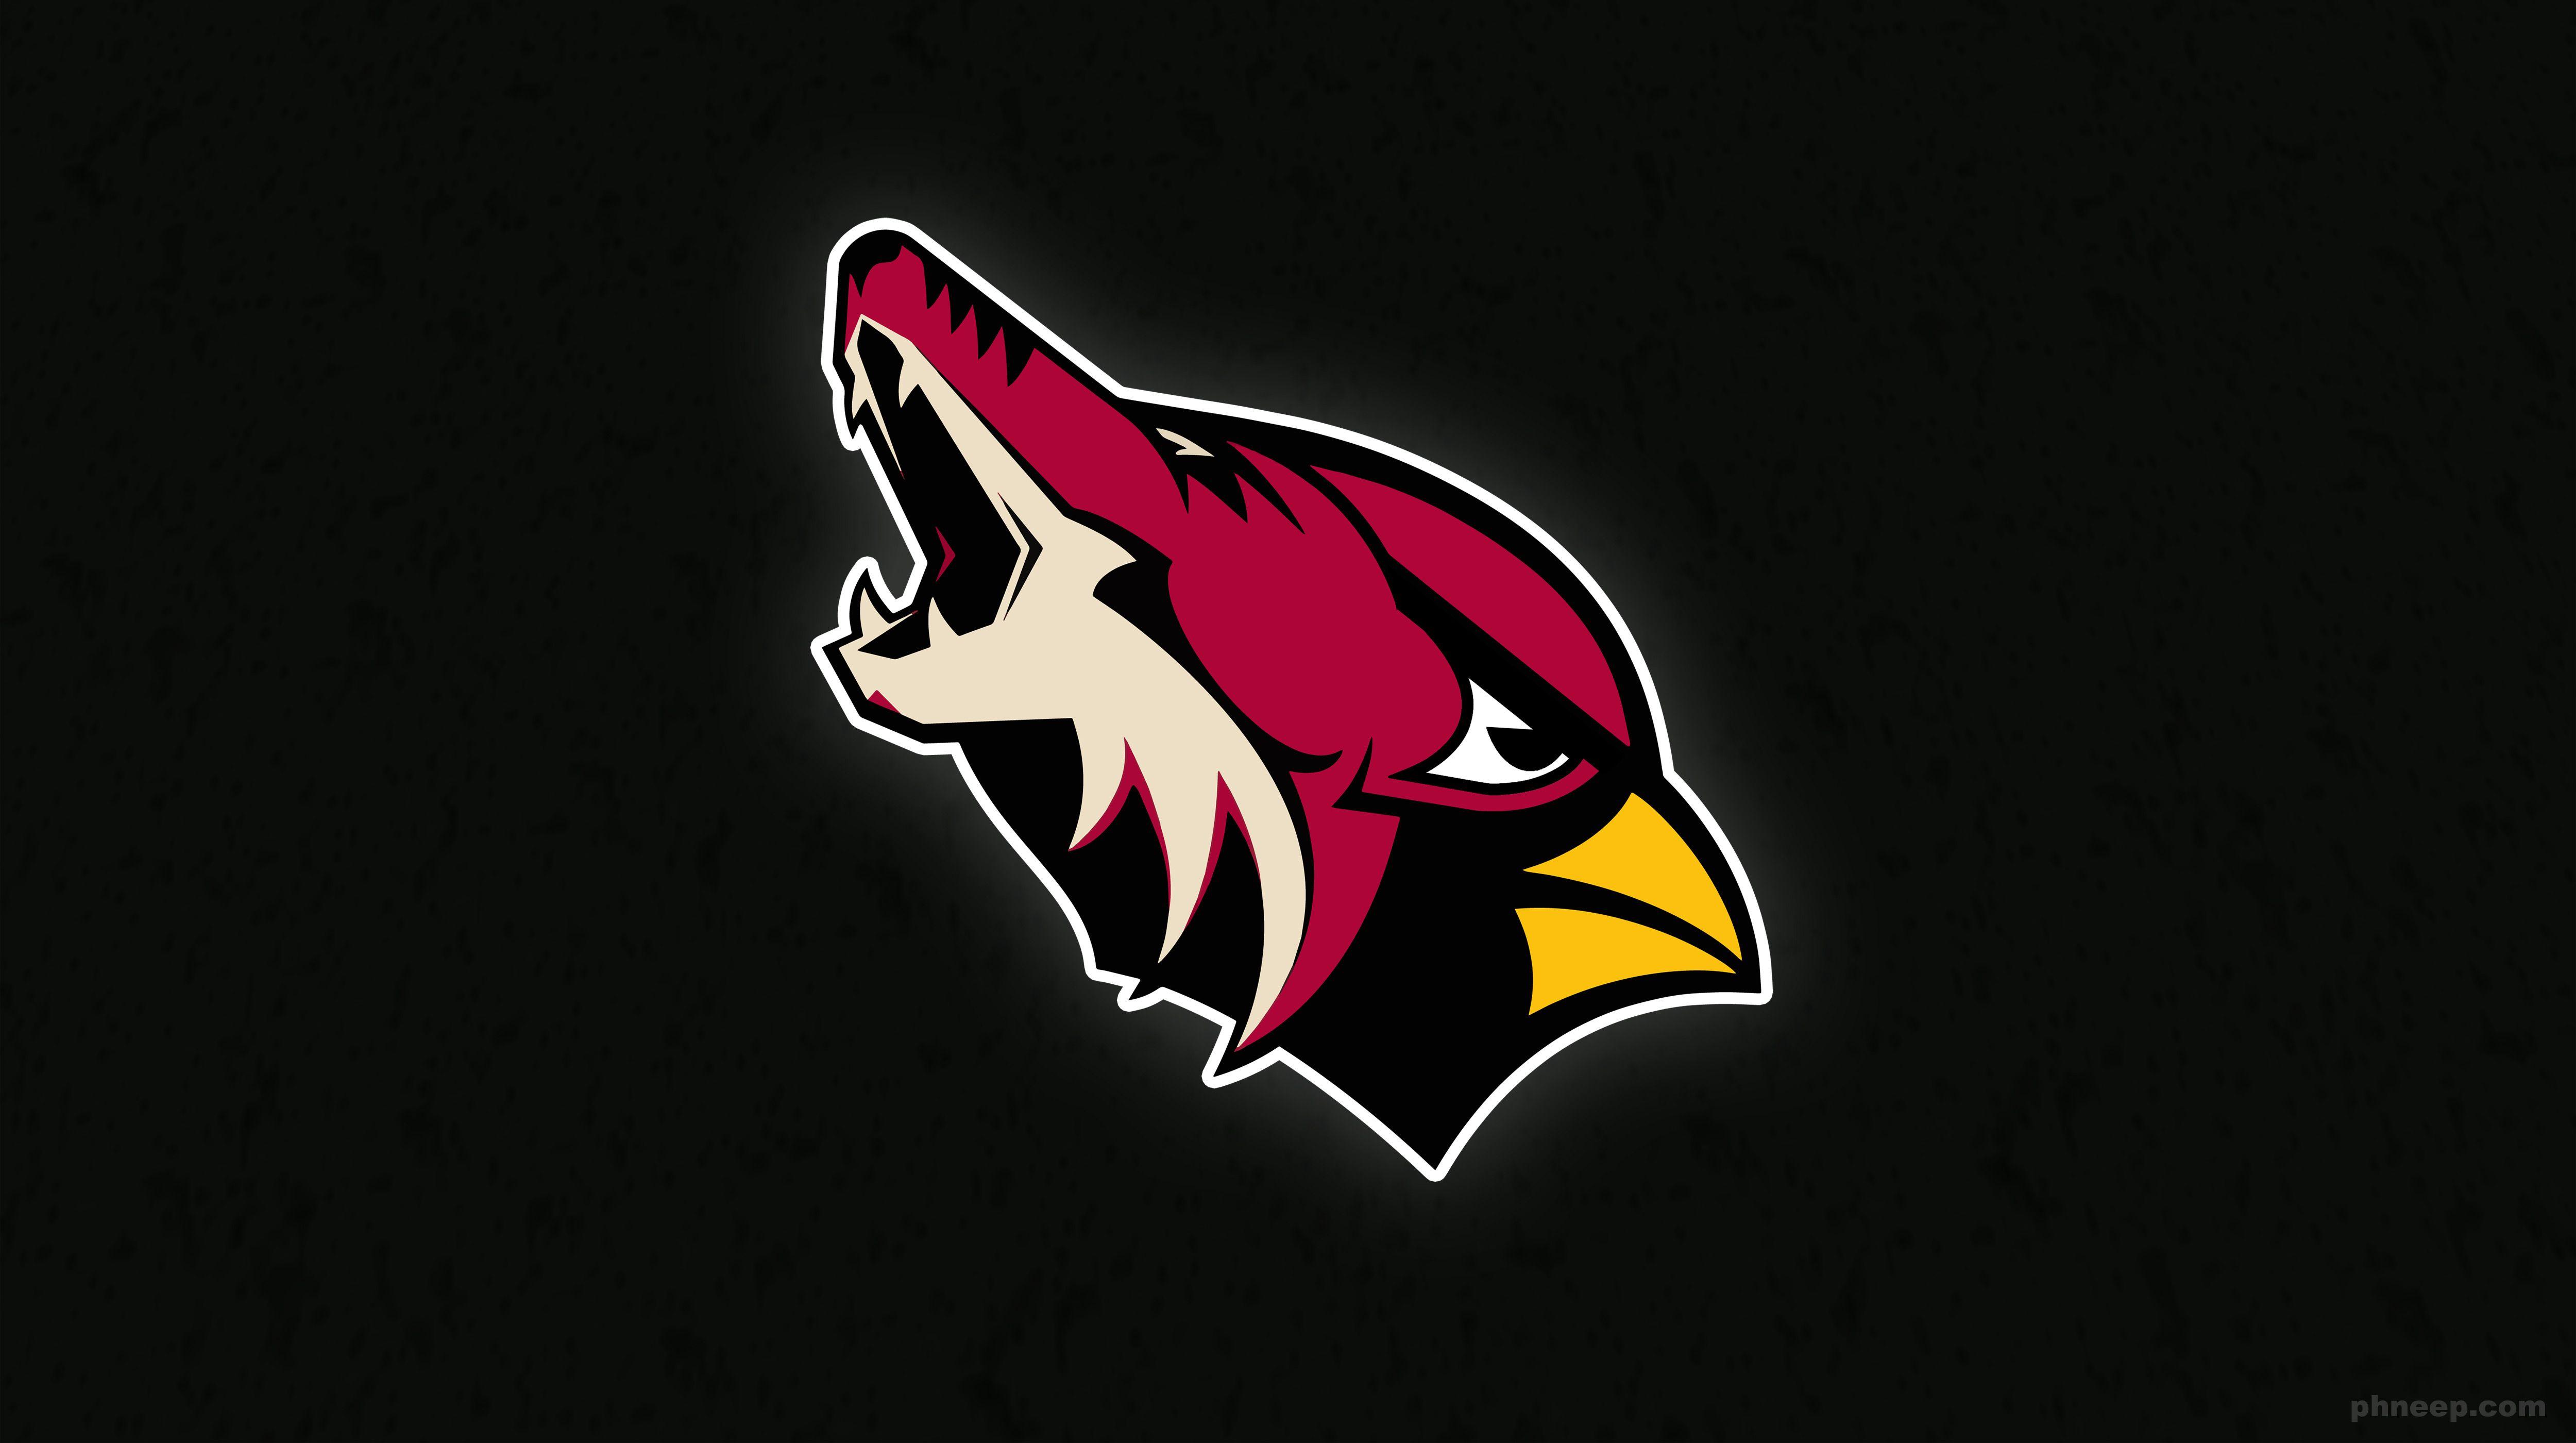 Arizona Cardinals Logo - Arizona Cardinals/Coyotes logo mashup : AZCardinals